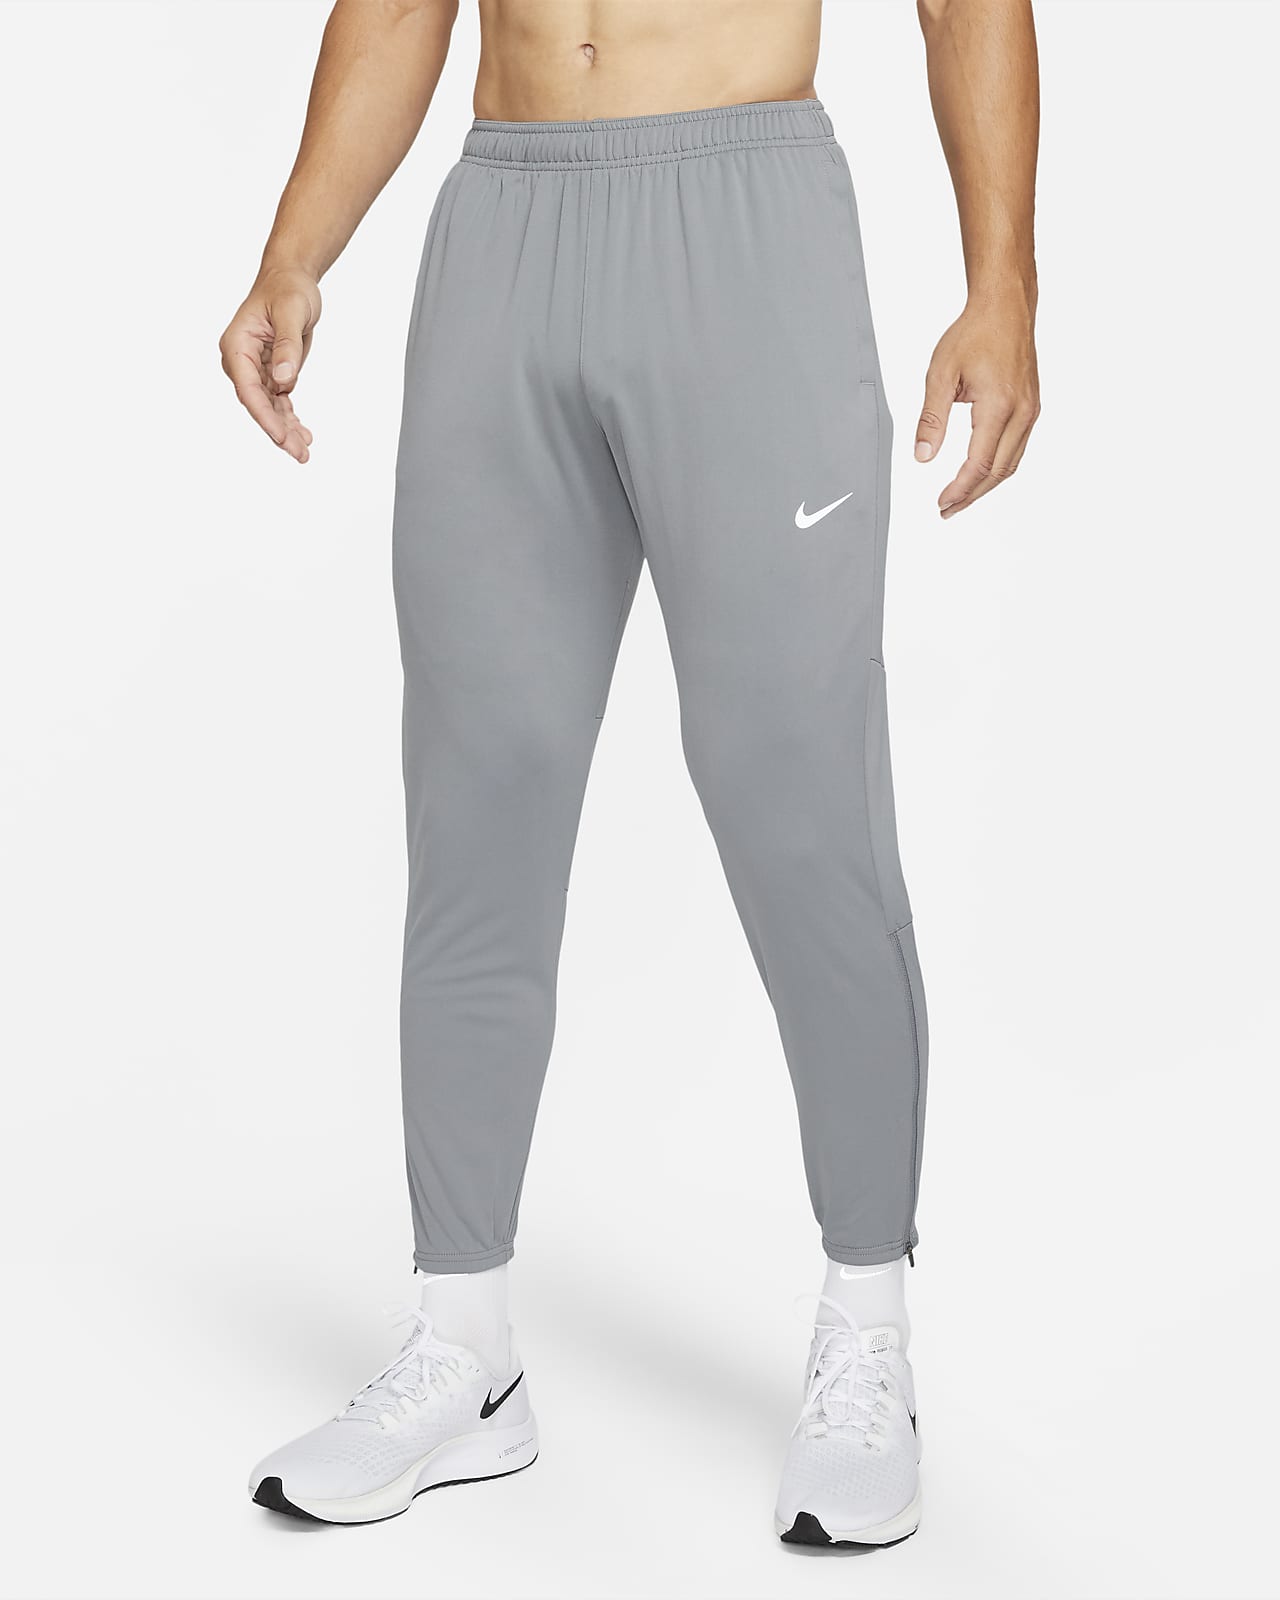 Ponte de pie en su lugar Lamer entrada Nike Dri-FIT Challenger Pantalón de running de tejido Knit - Hombre. Nike ES